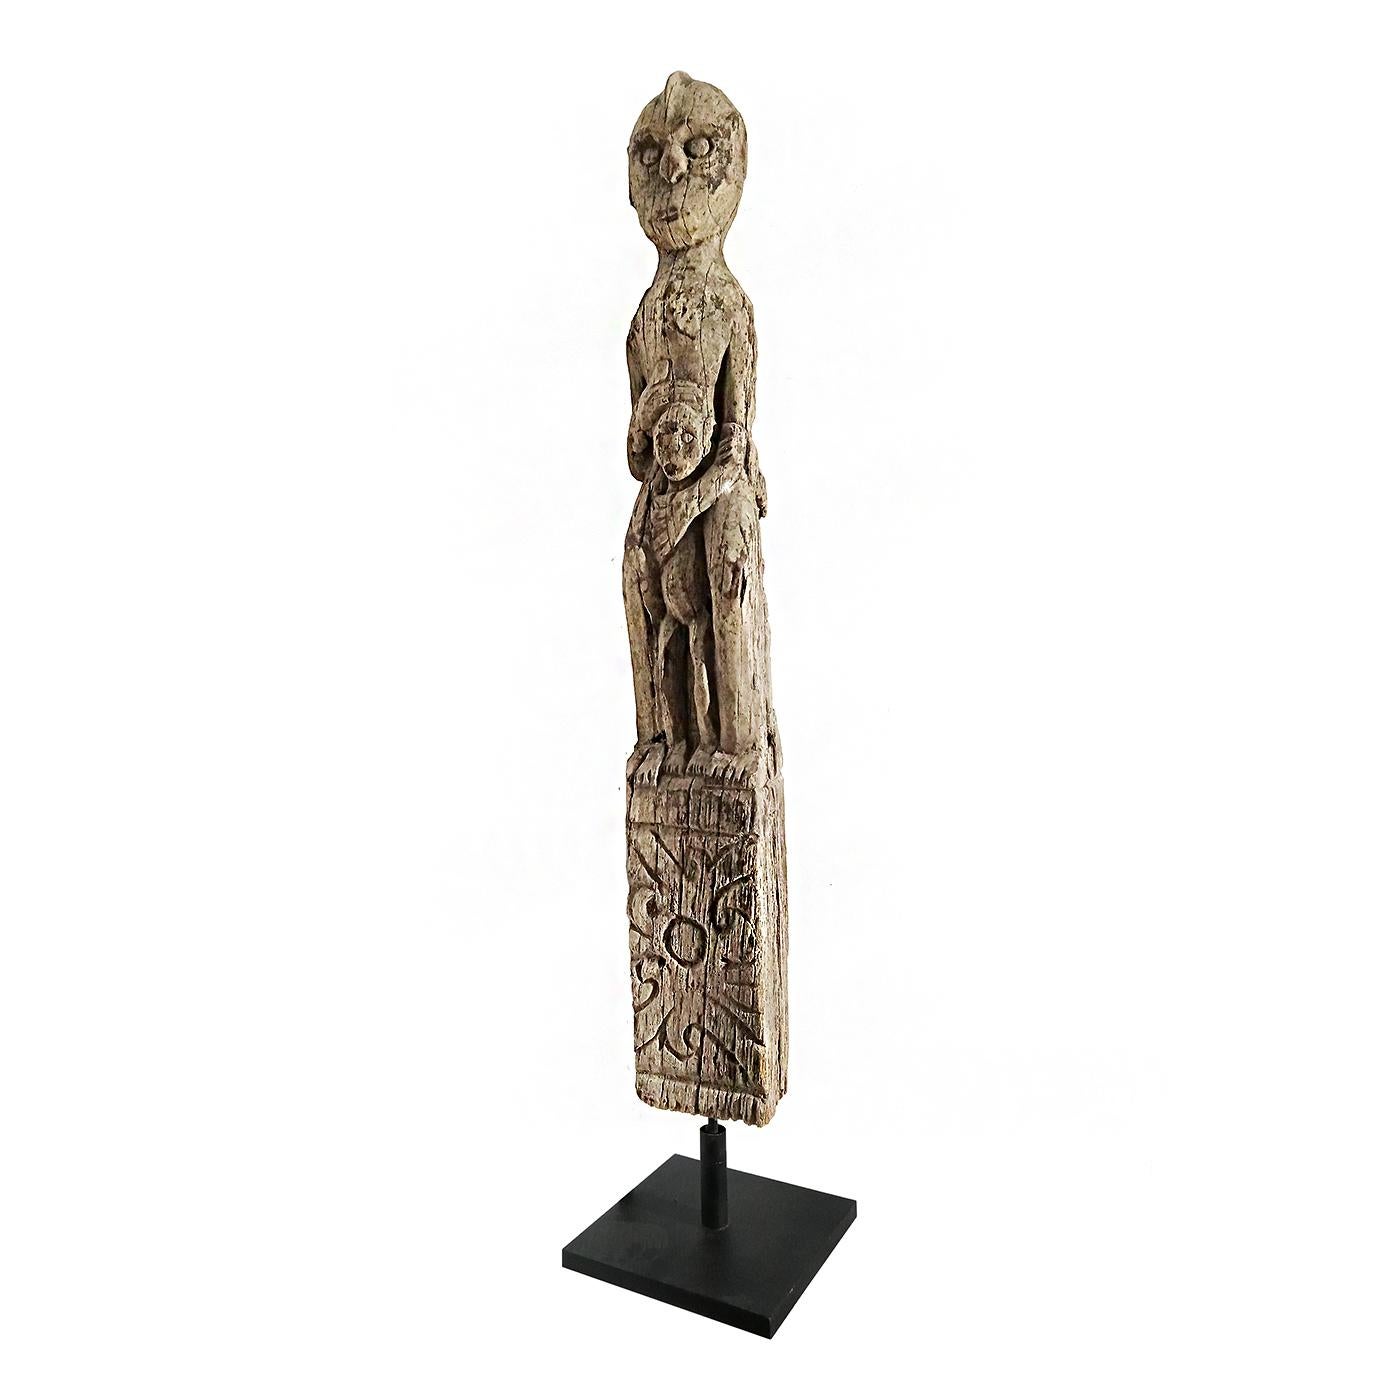 Effigie sculptée à la main d'une mère et d'un enfant de la tribu Dayak de Bornéo, montée sur un support en métal noir. 

Les figures ancestrales étaient importantes dans la culture Dayak en tant que moyen de protection spirituelle. Les sculptures